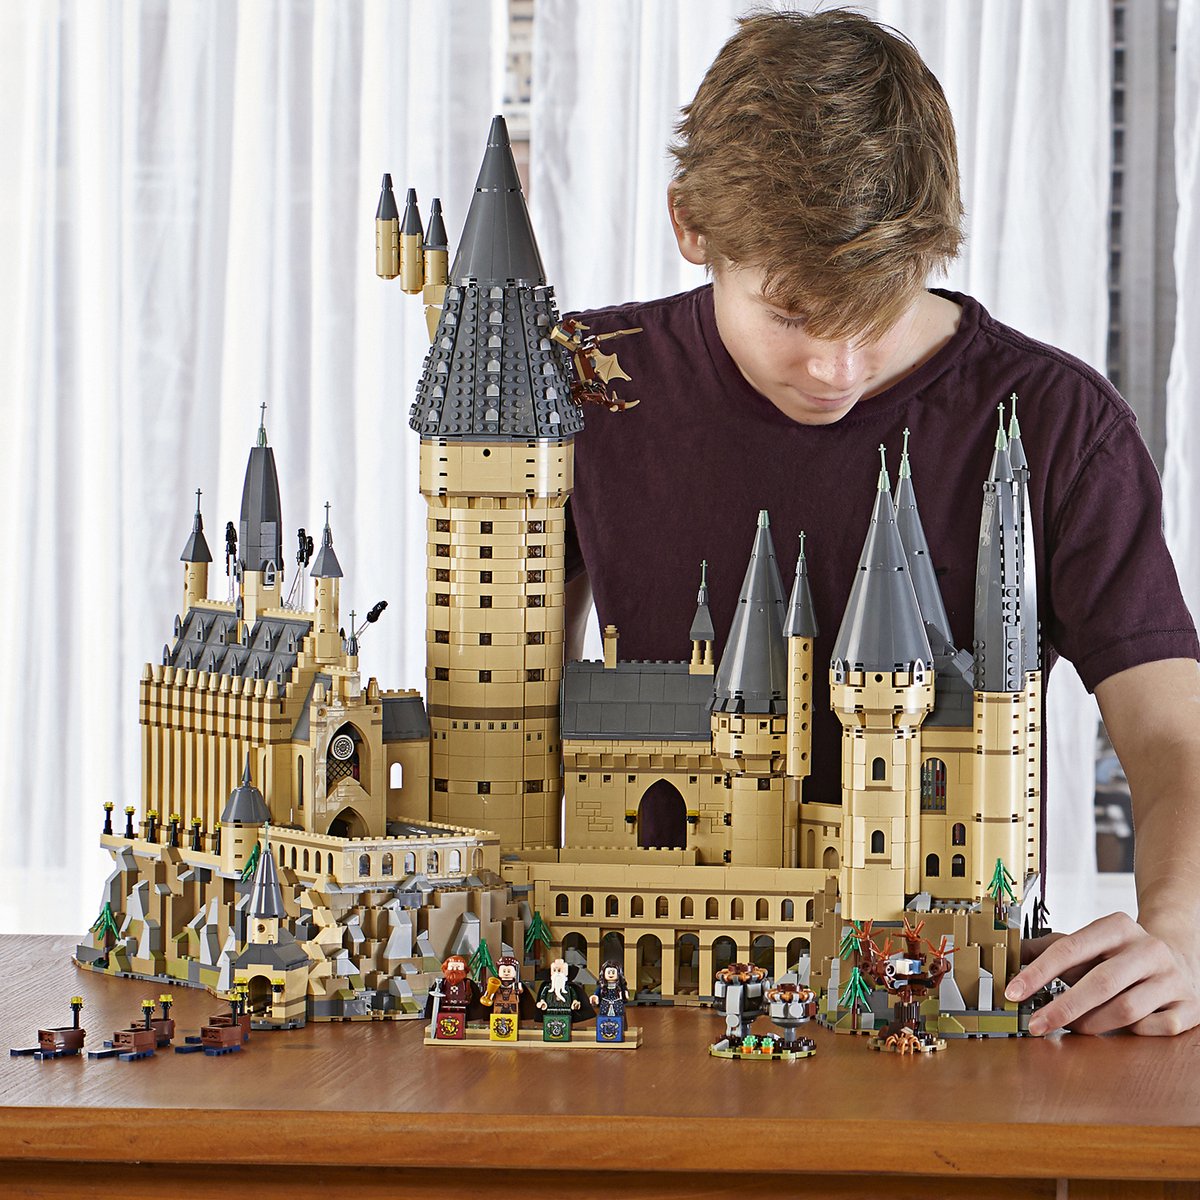 LEGO Harry Potter Kasteel Zweinstein